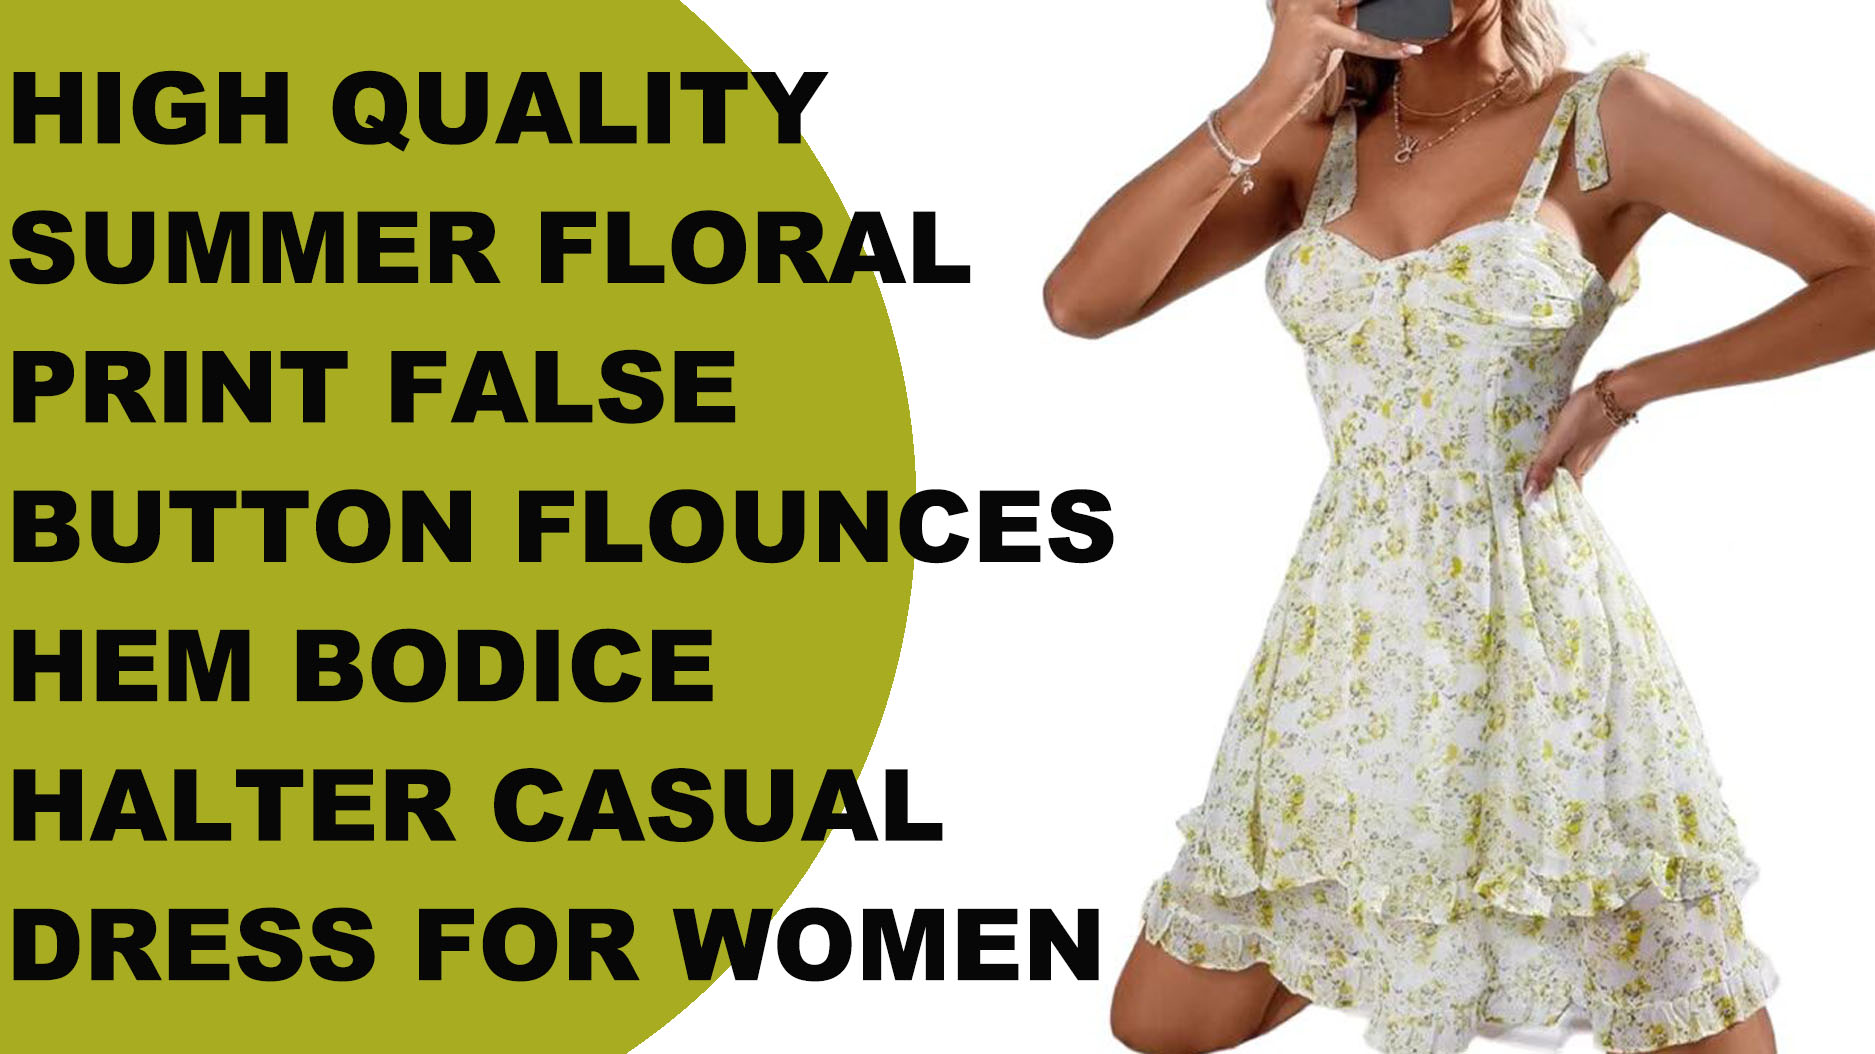 महिलाओं के लिए स्क्वायर कॉलर पैचवर्क प्रिंटेड कैज़ुअल ड्रेस